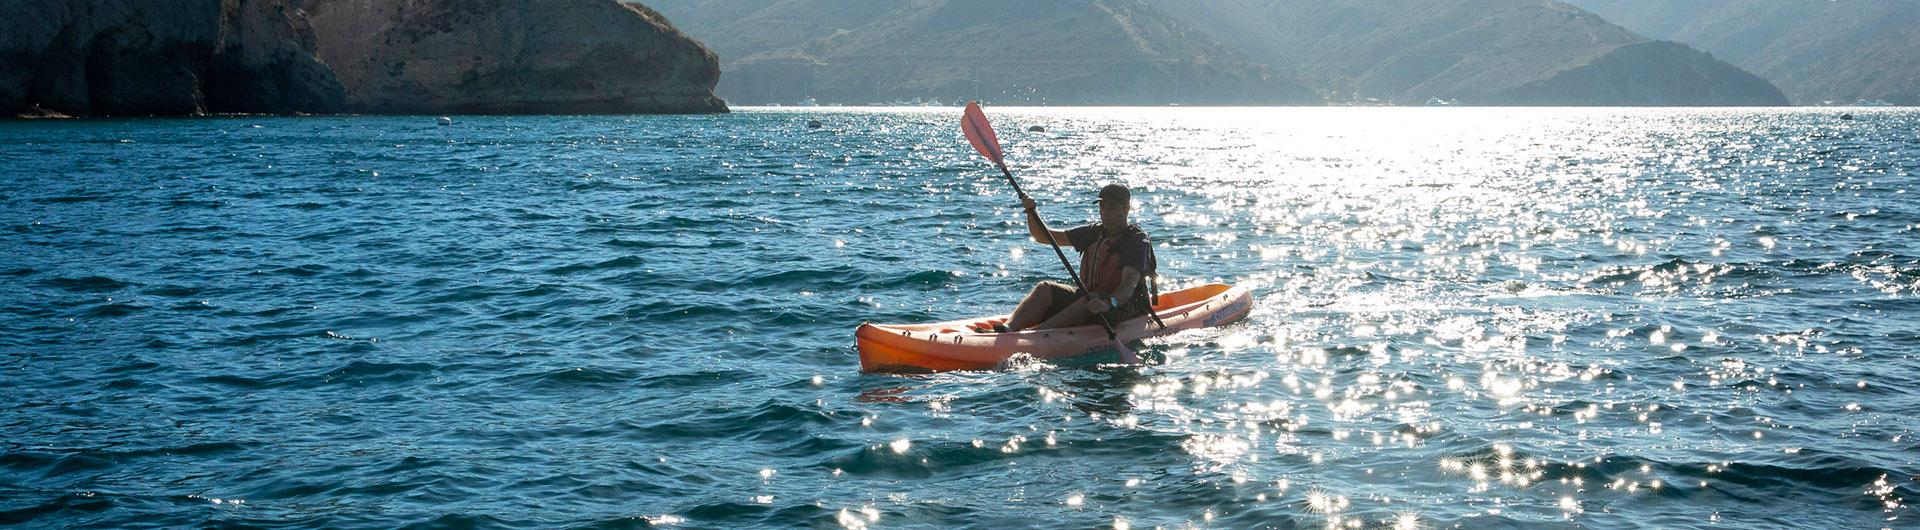 Image of person kayaking